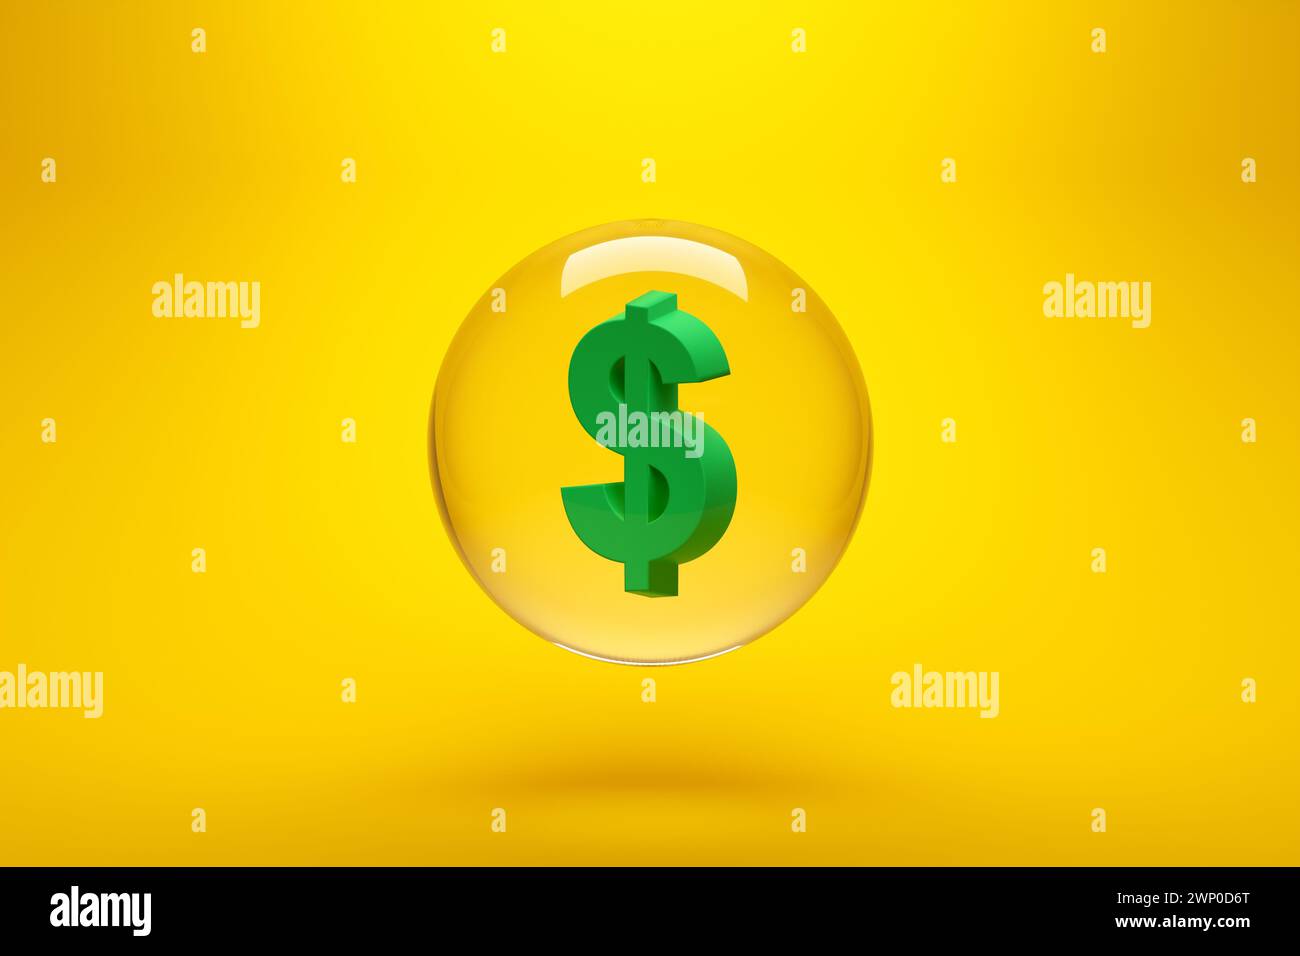 Symbole de la devise du dollar AMÉRICAIN dans une sphère de verre sur fond jaune. Concept de bulle économique. Inflation, dévaluation et récession. Rendu 3D. Banque D'Images